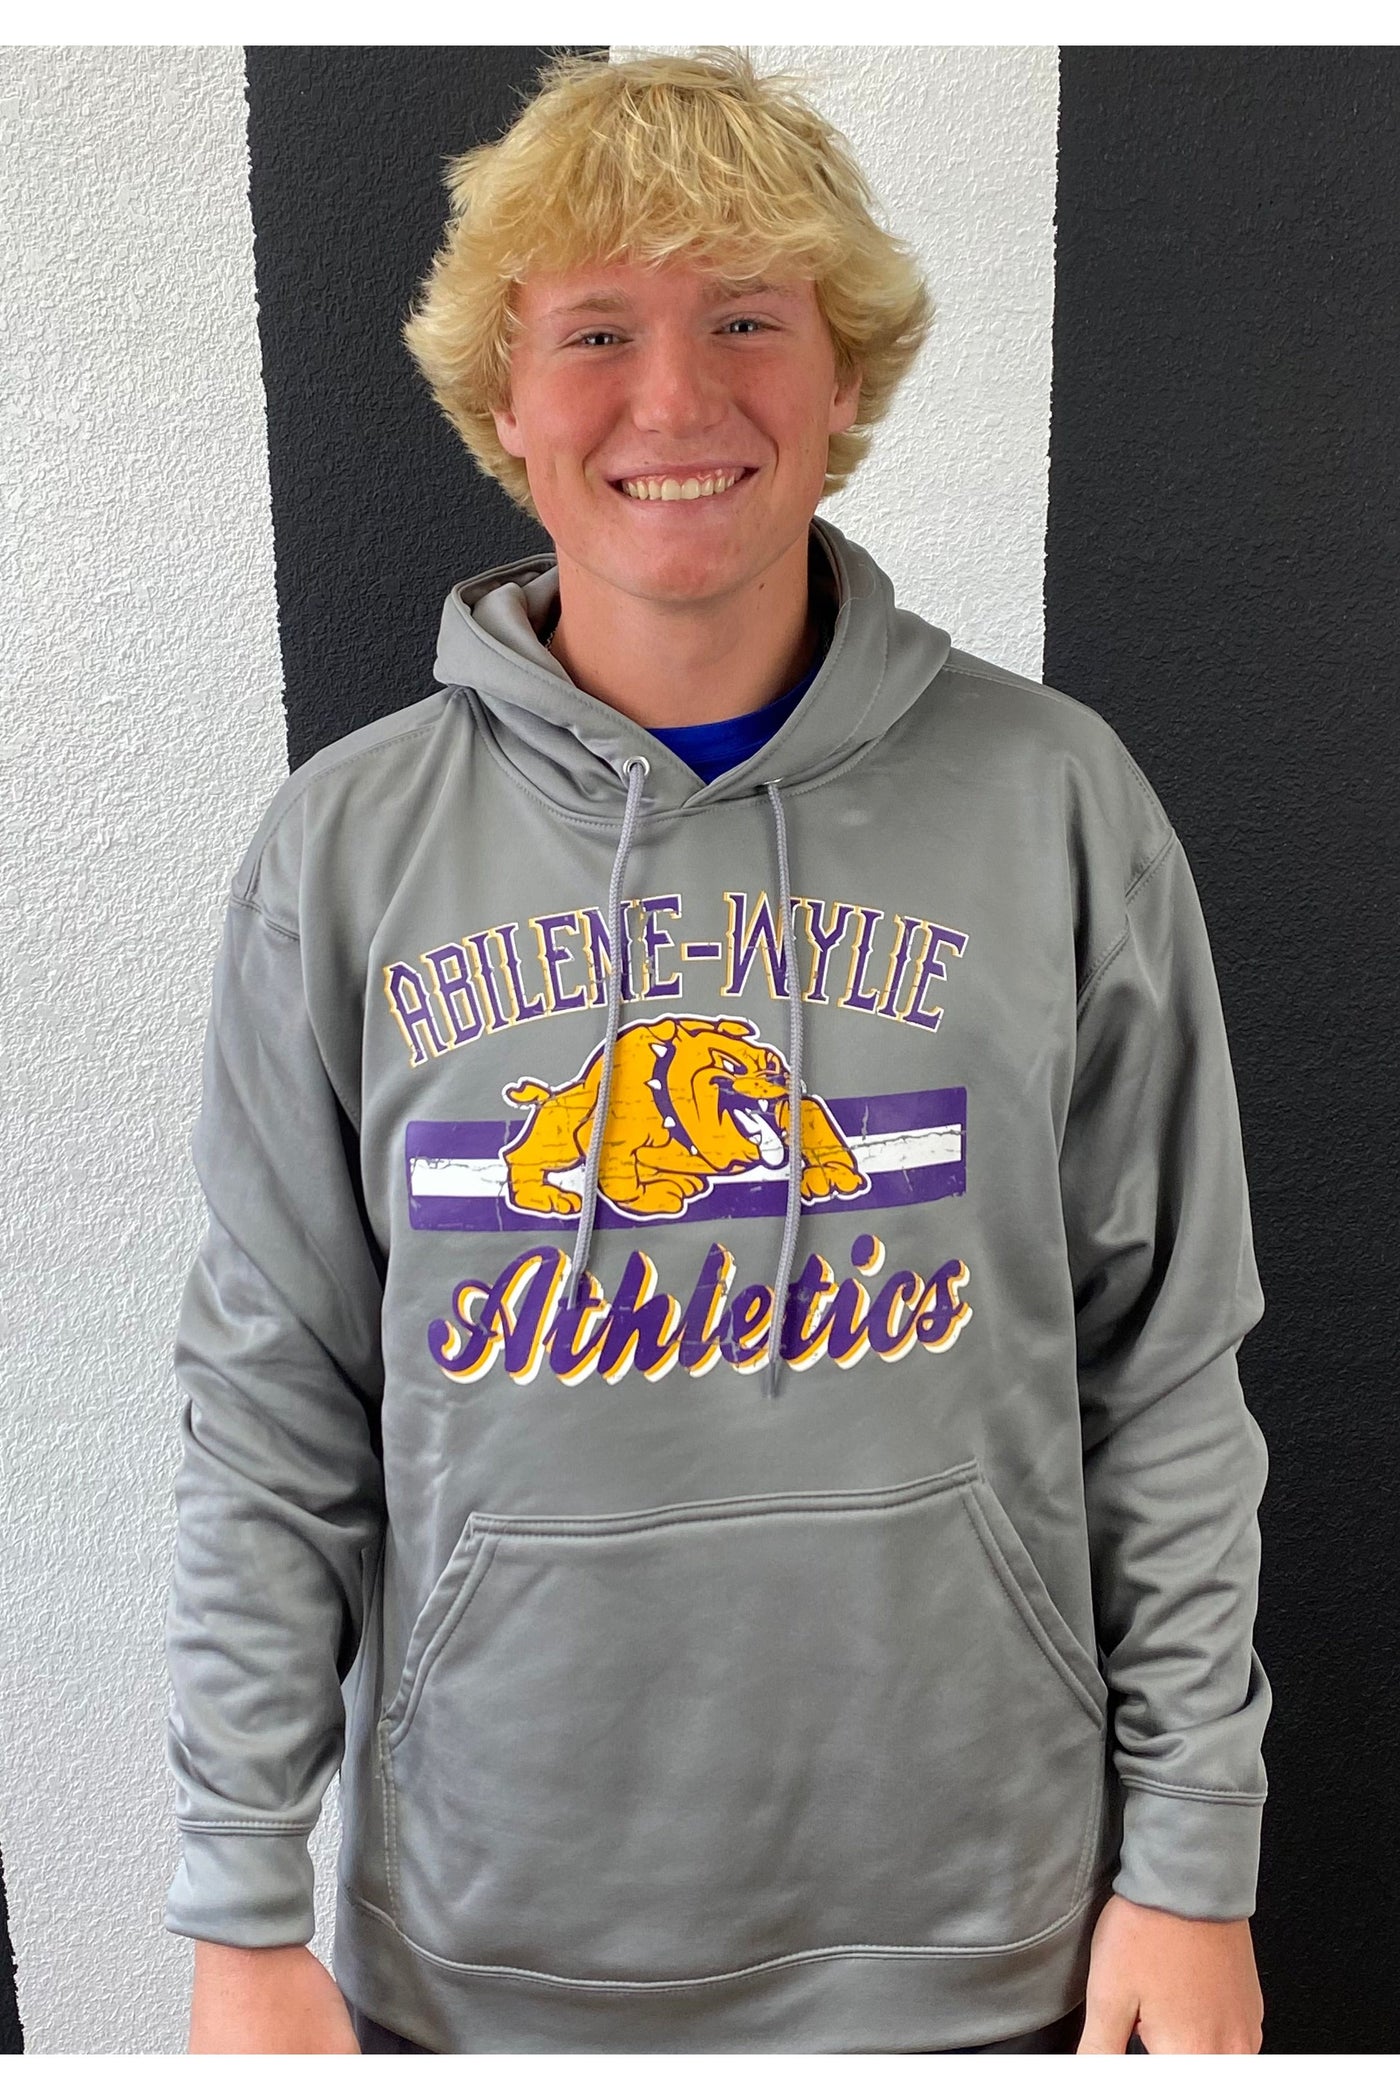 Abilene-Wylie Bulldog Athletics Hooded Sweatshirt